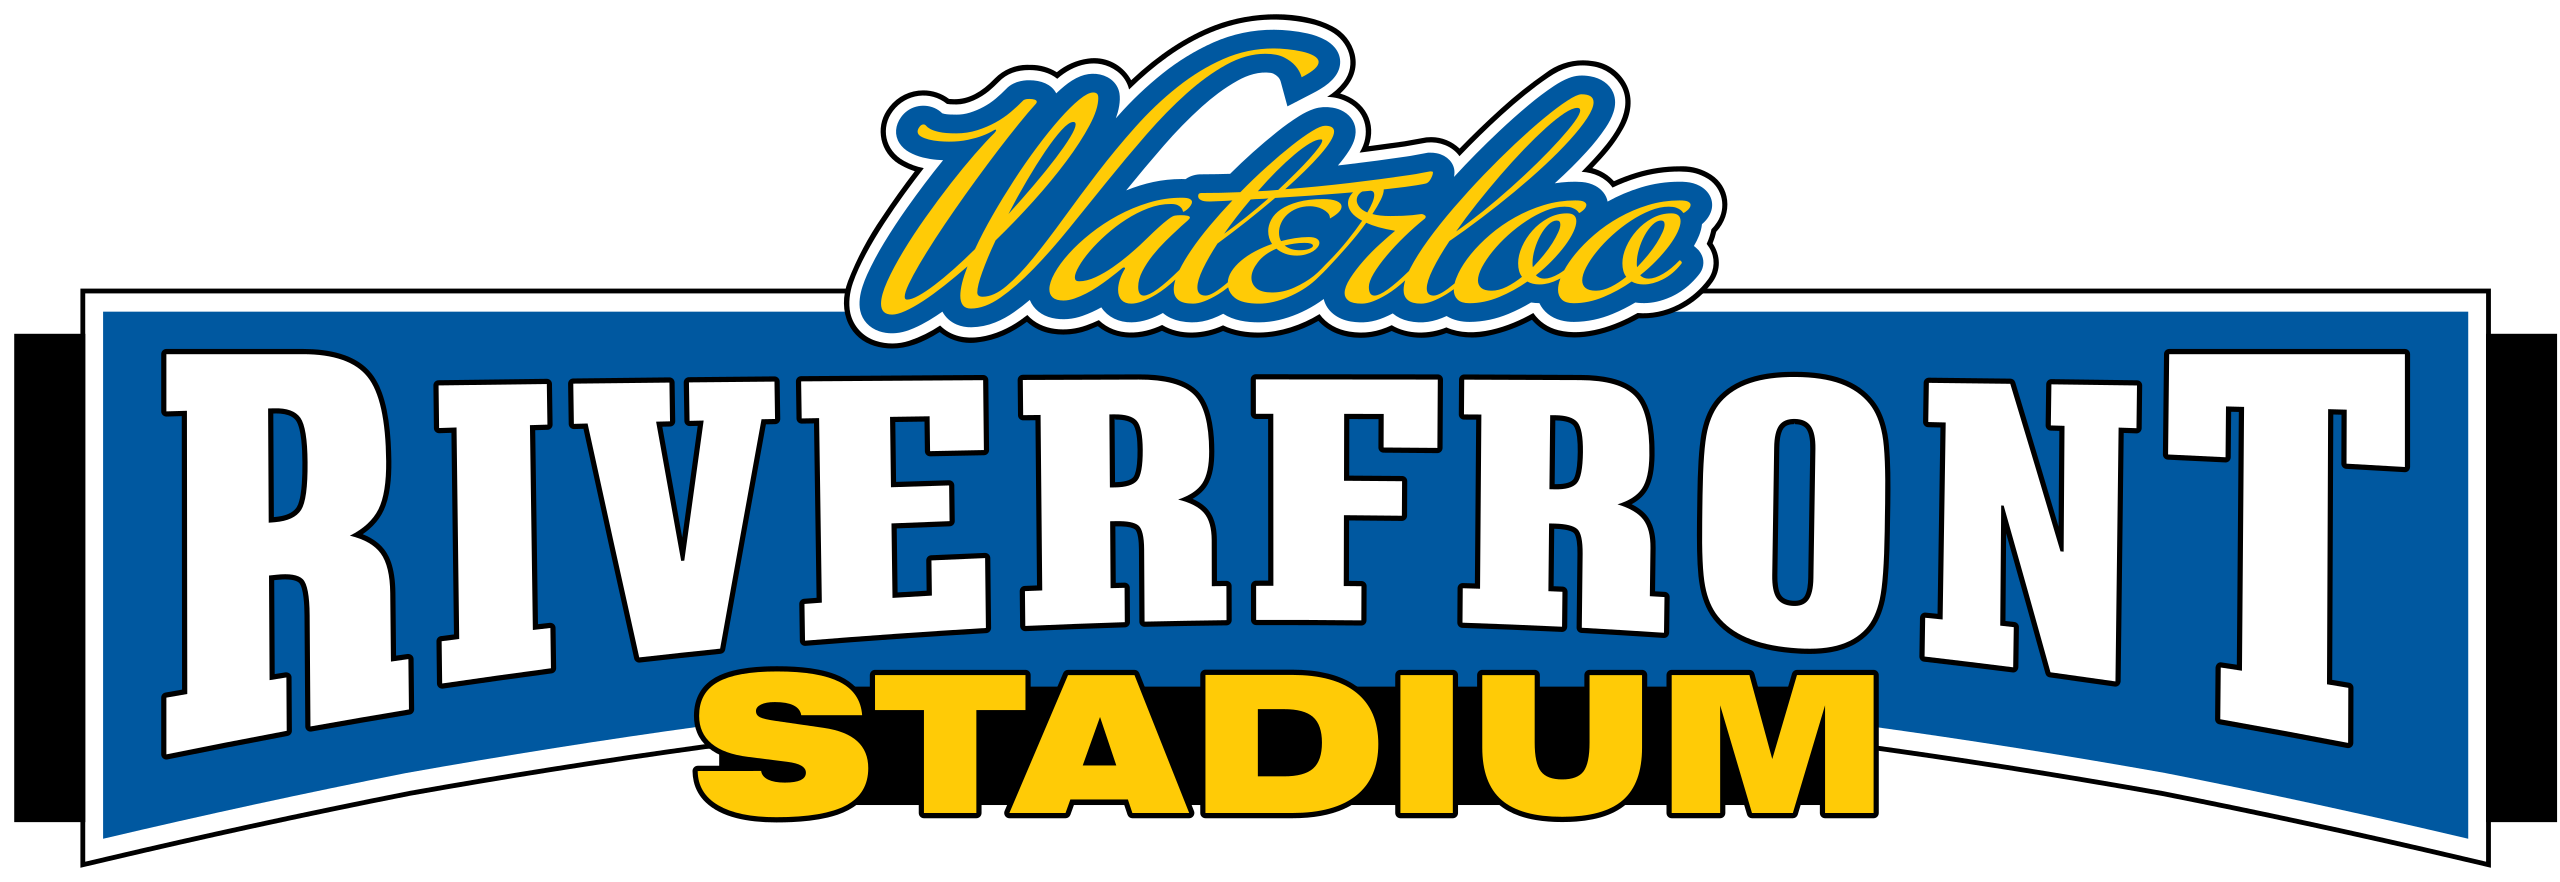 File:Riverfront Stadium (Waterloo) logo.svg.